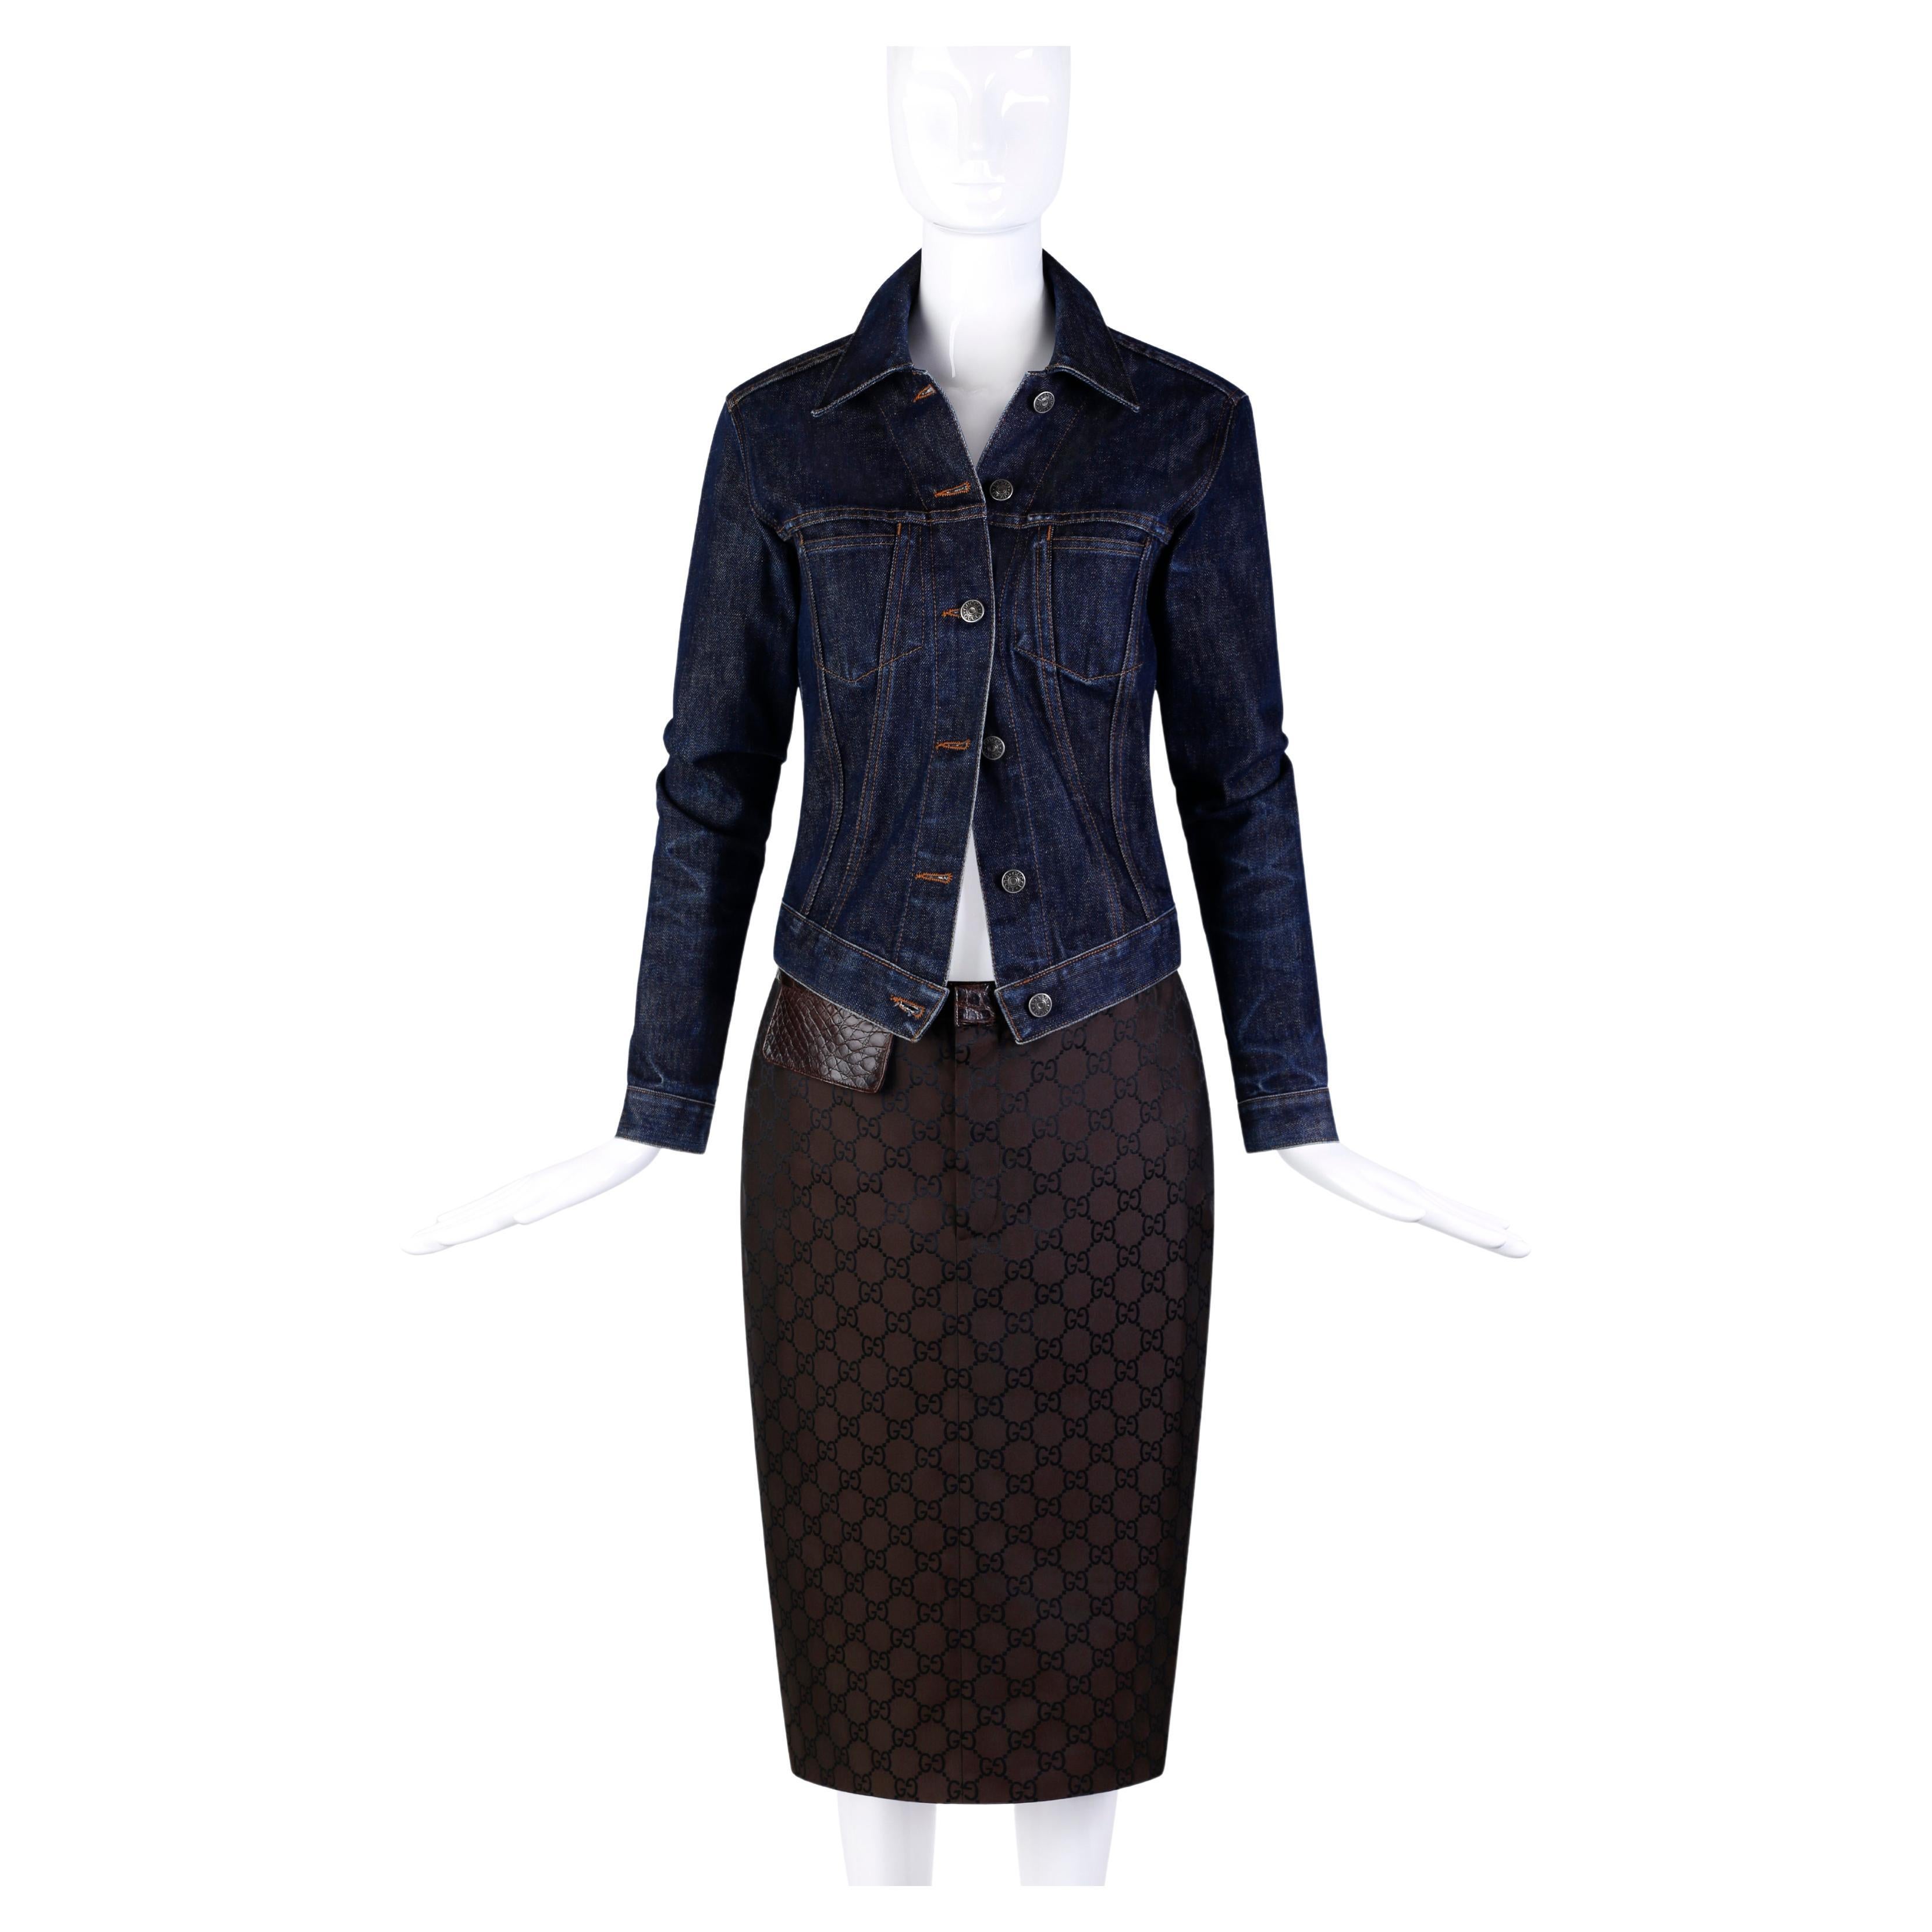 Gucci by Tom Ford - Ensemble jupe et veste en denim avec imprimé « GG » et jupe ornée de cuir, printemps-été 1998